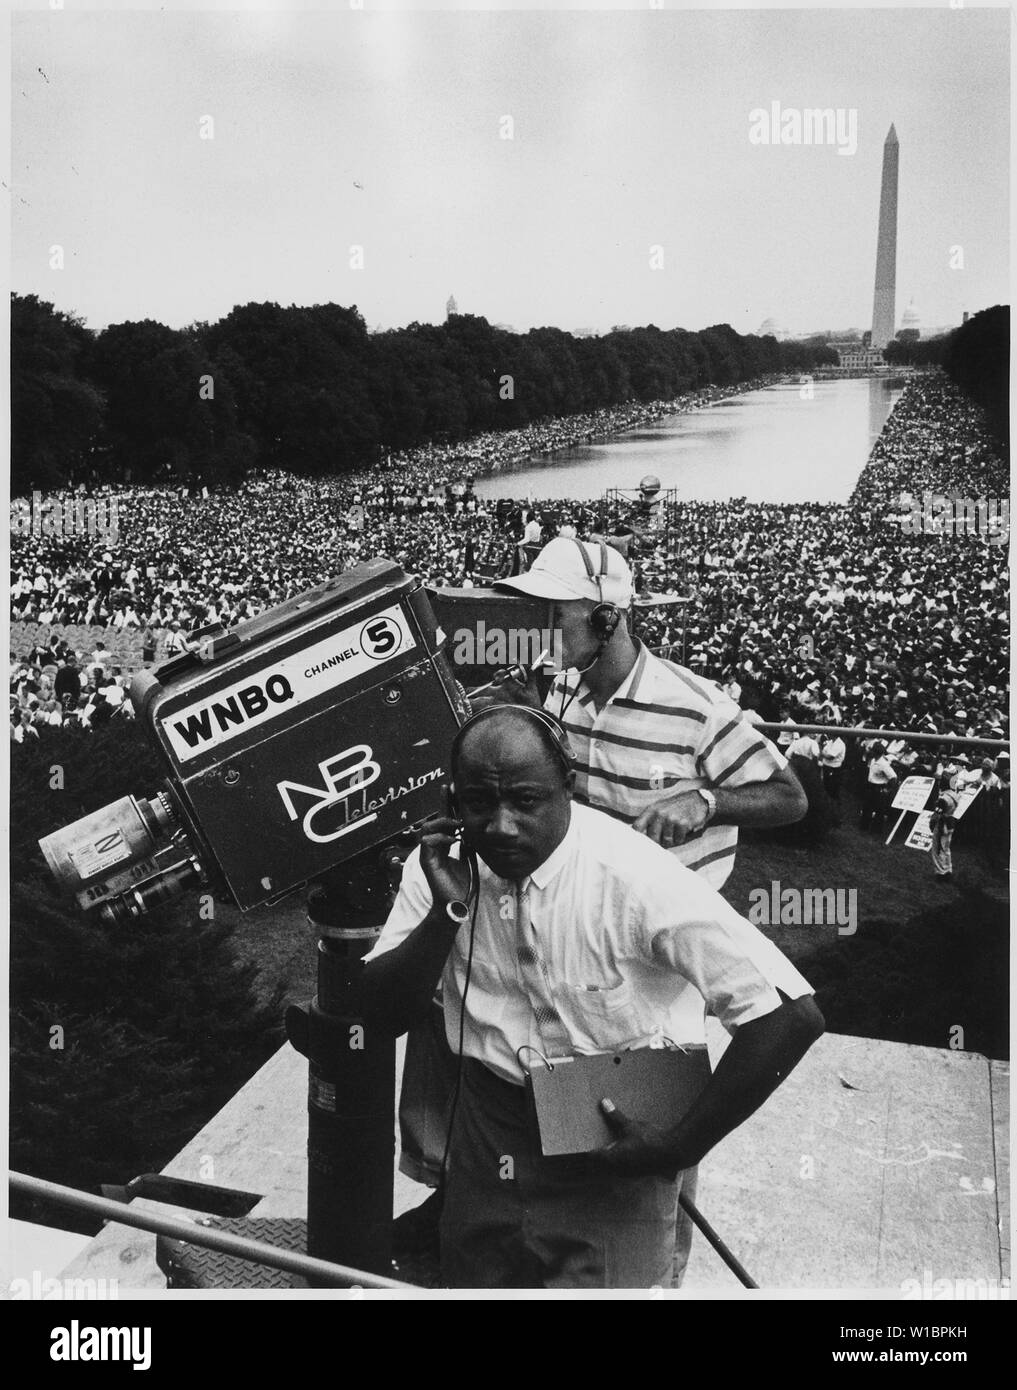 Manifestation à Washington, D.C. [WNBQ/National Broadcasting Company équipe de télévision (Canal 5) avec Washington Monument et foule en arrière-plan.] Banque D'Images